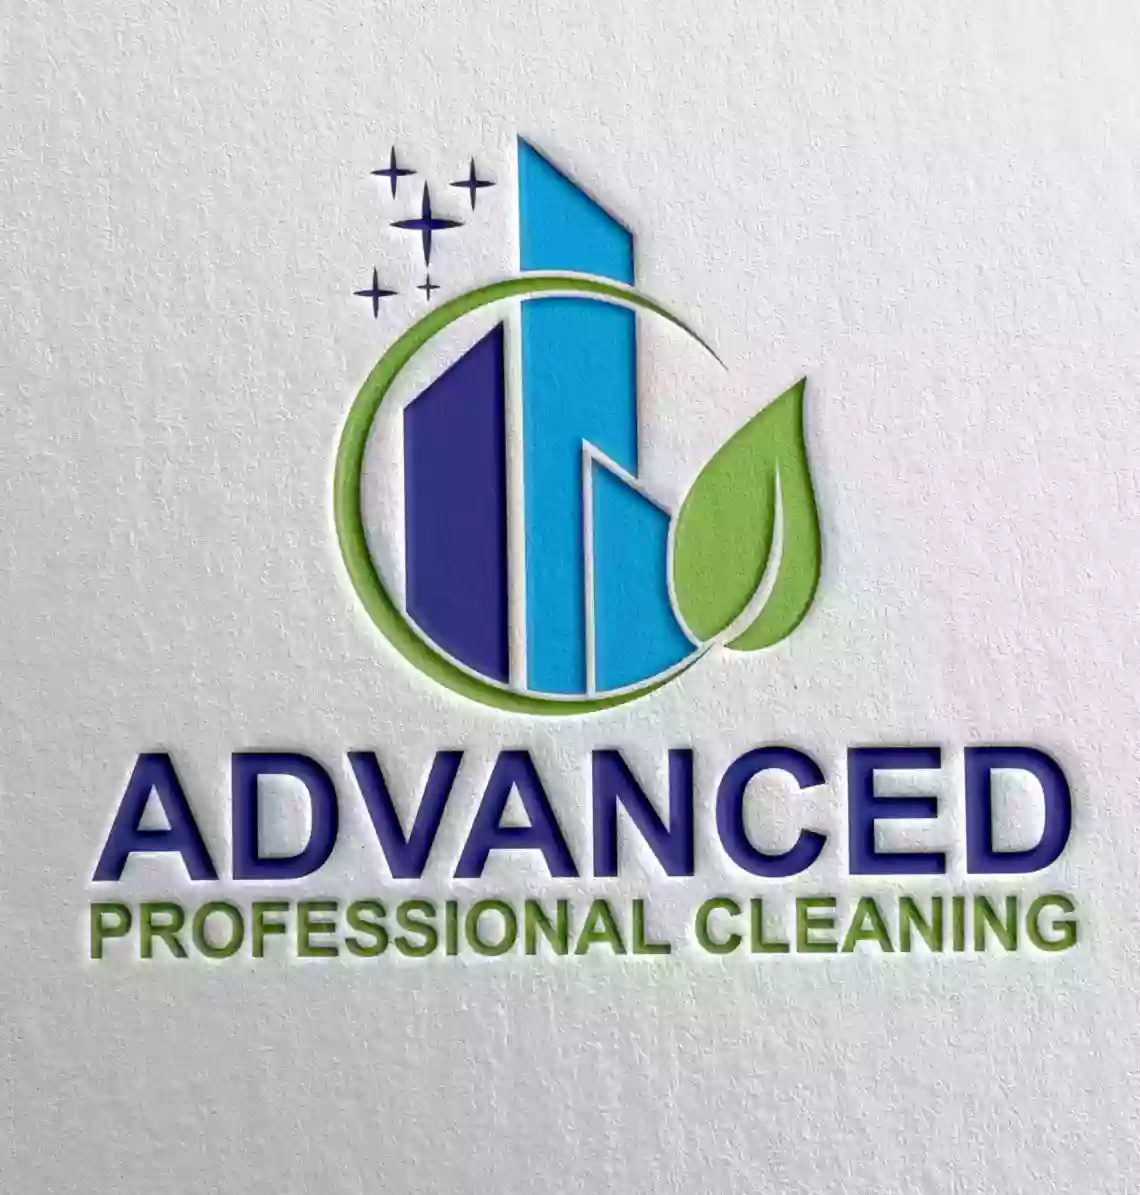 Advanced Professional Cleaning, LLC